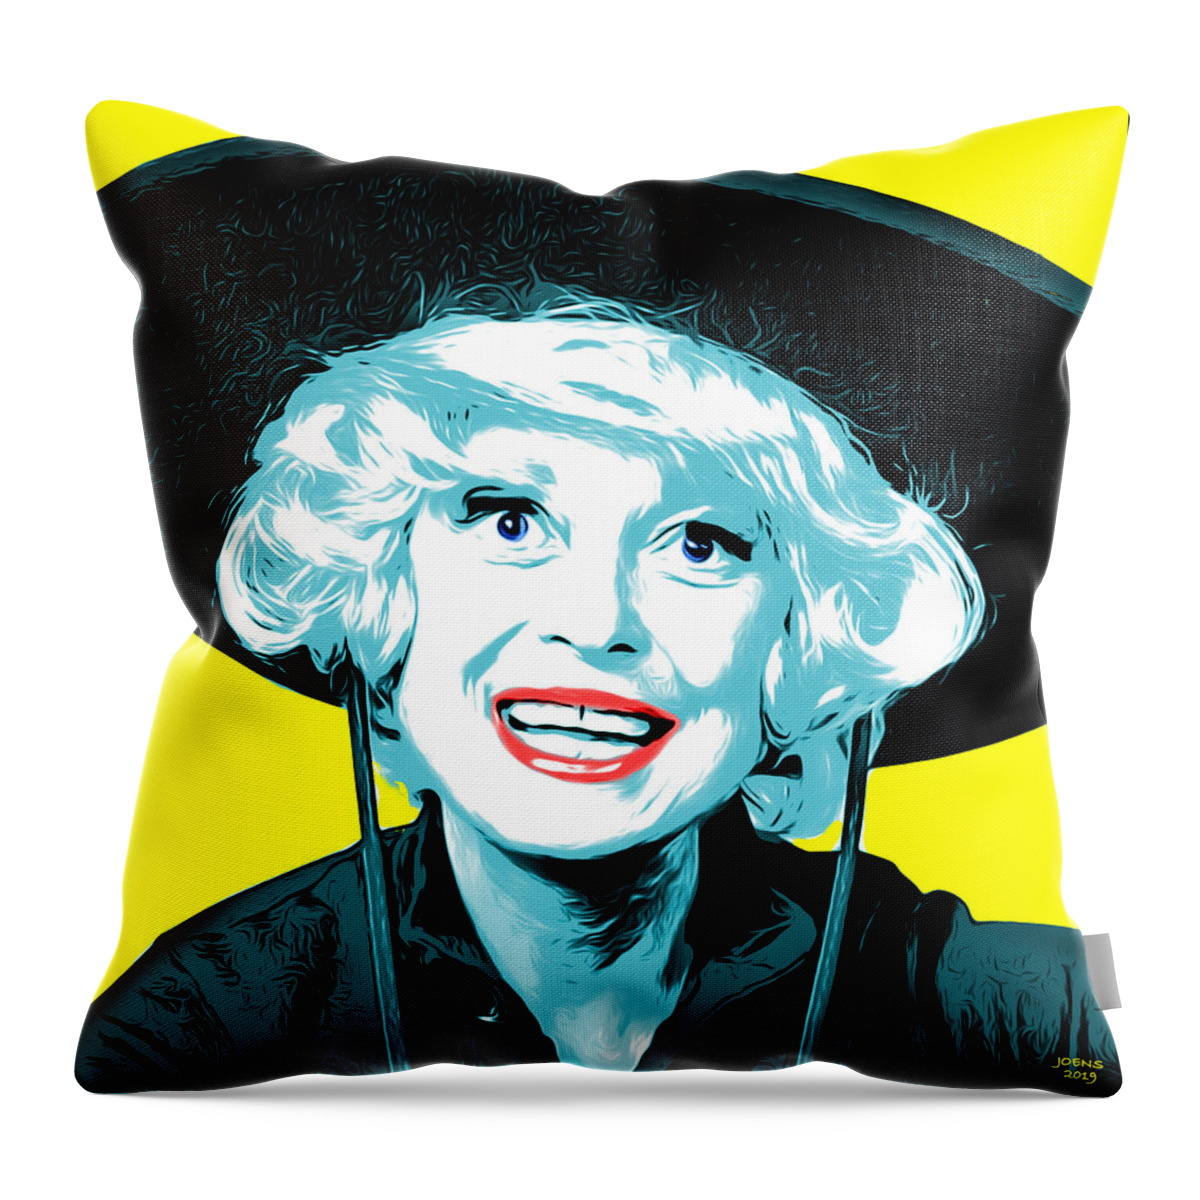 Pop Art Throw Pillow featuring the digital art Carol Channing by Greg Joens